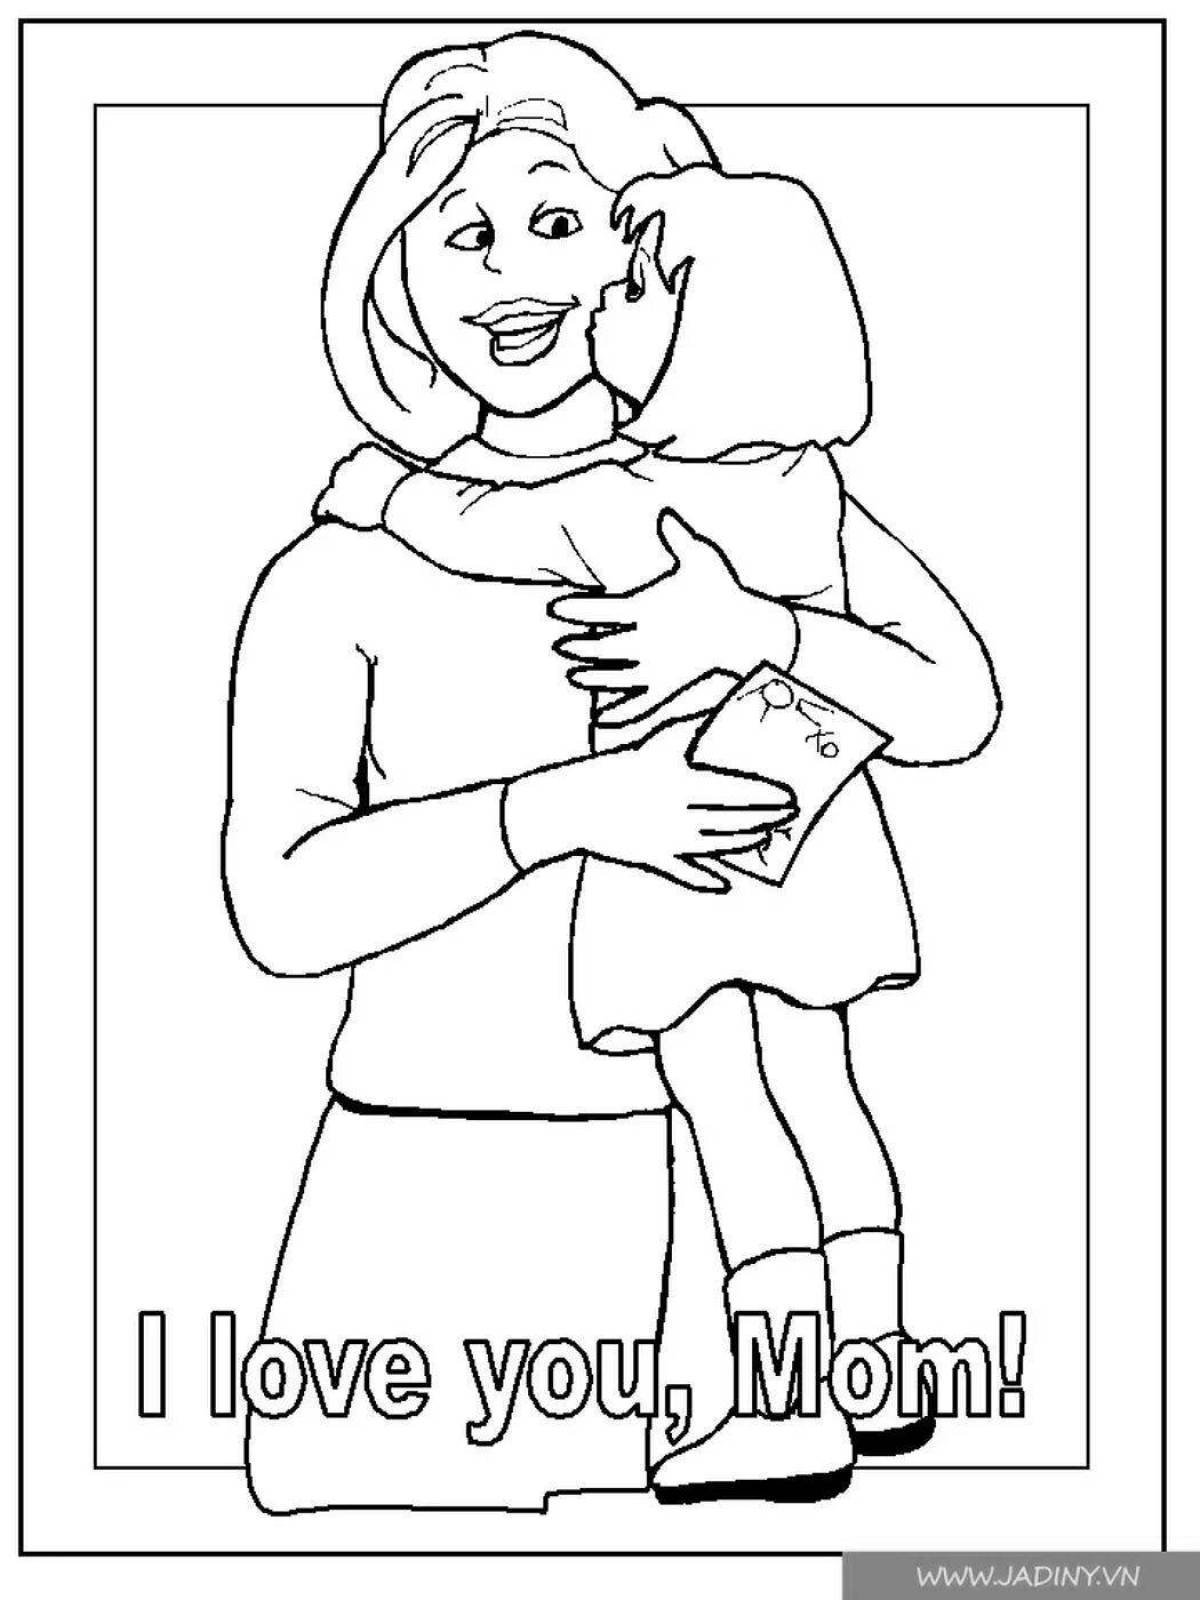 Раскраска про маму. Раскраска мама. Рисунок для мамы раскраска. Мама раскраска для детей. Раскраска ко Дню матери.